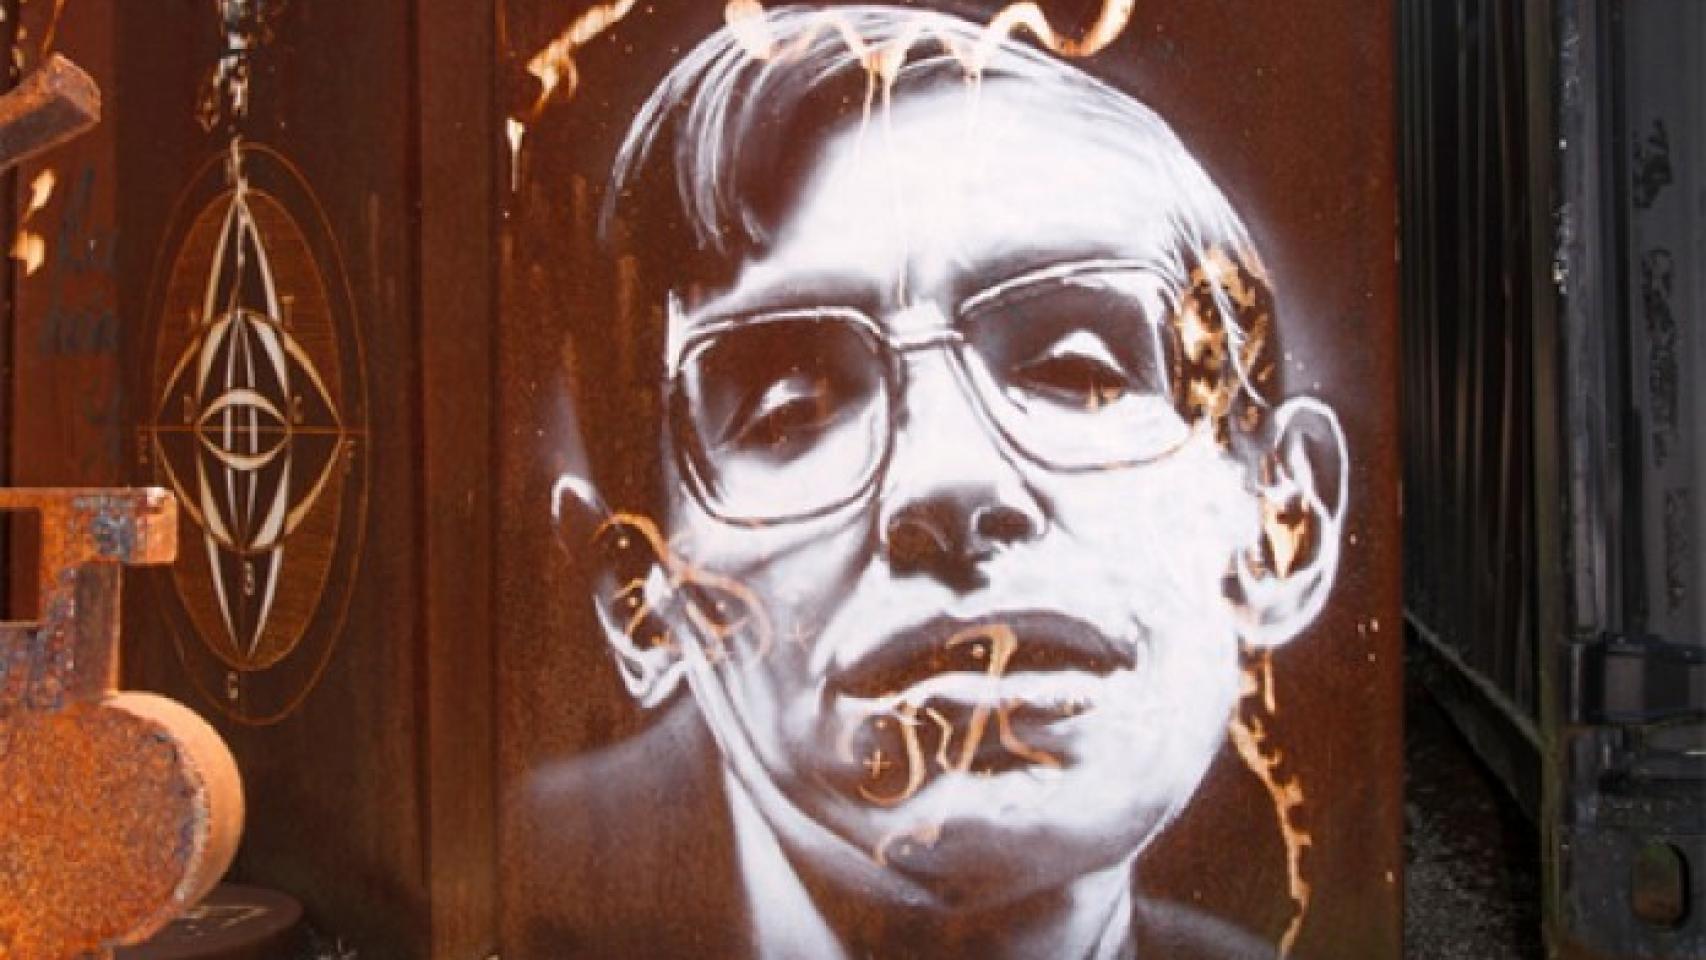 Graffiti con un retrato de Stephen Hawking. Foto: Thierry Ehrmann (CC BY 2.0)